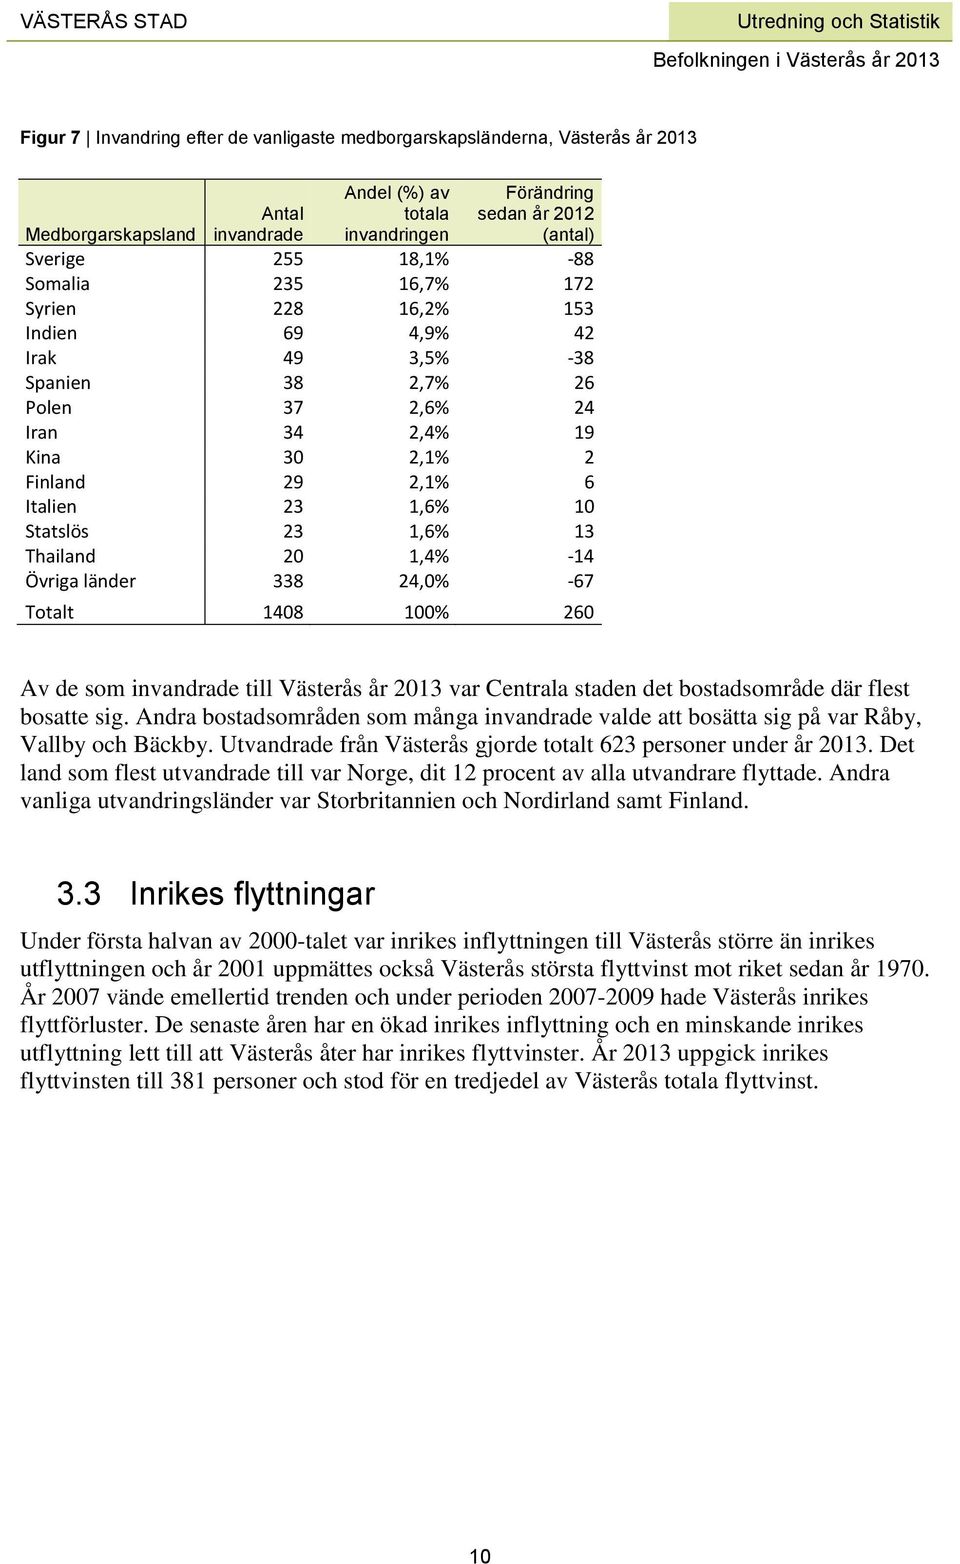 1,6% 13 Thailand 20 1,4% -14 Övriga länder 338 24,0% -67 Totalt 1408 100% 260 Av de som invandrade till Västerås år 2013 var Centrala staden det bostadsområde där flest bosatte sig.